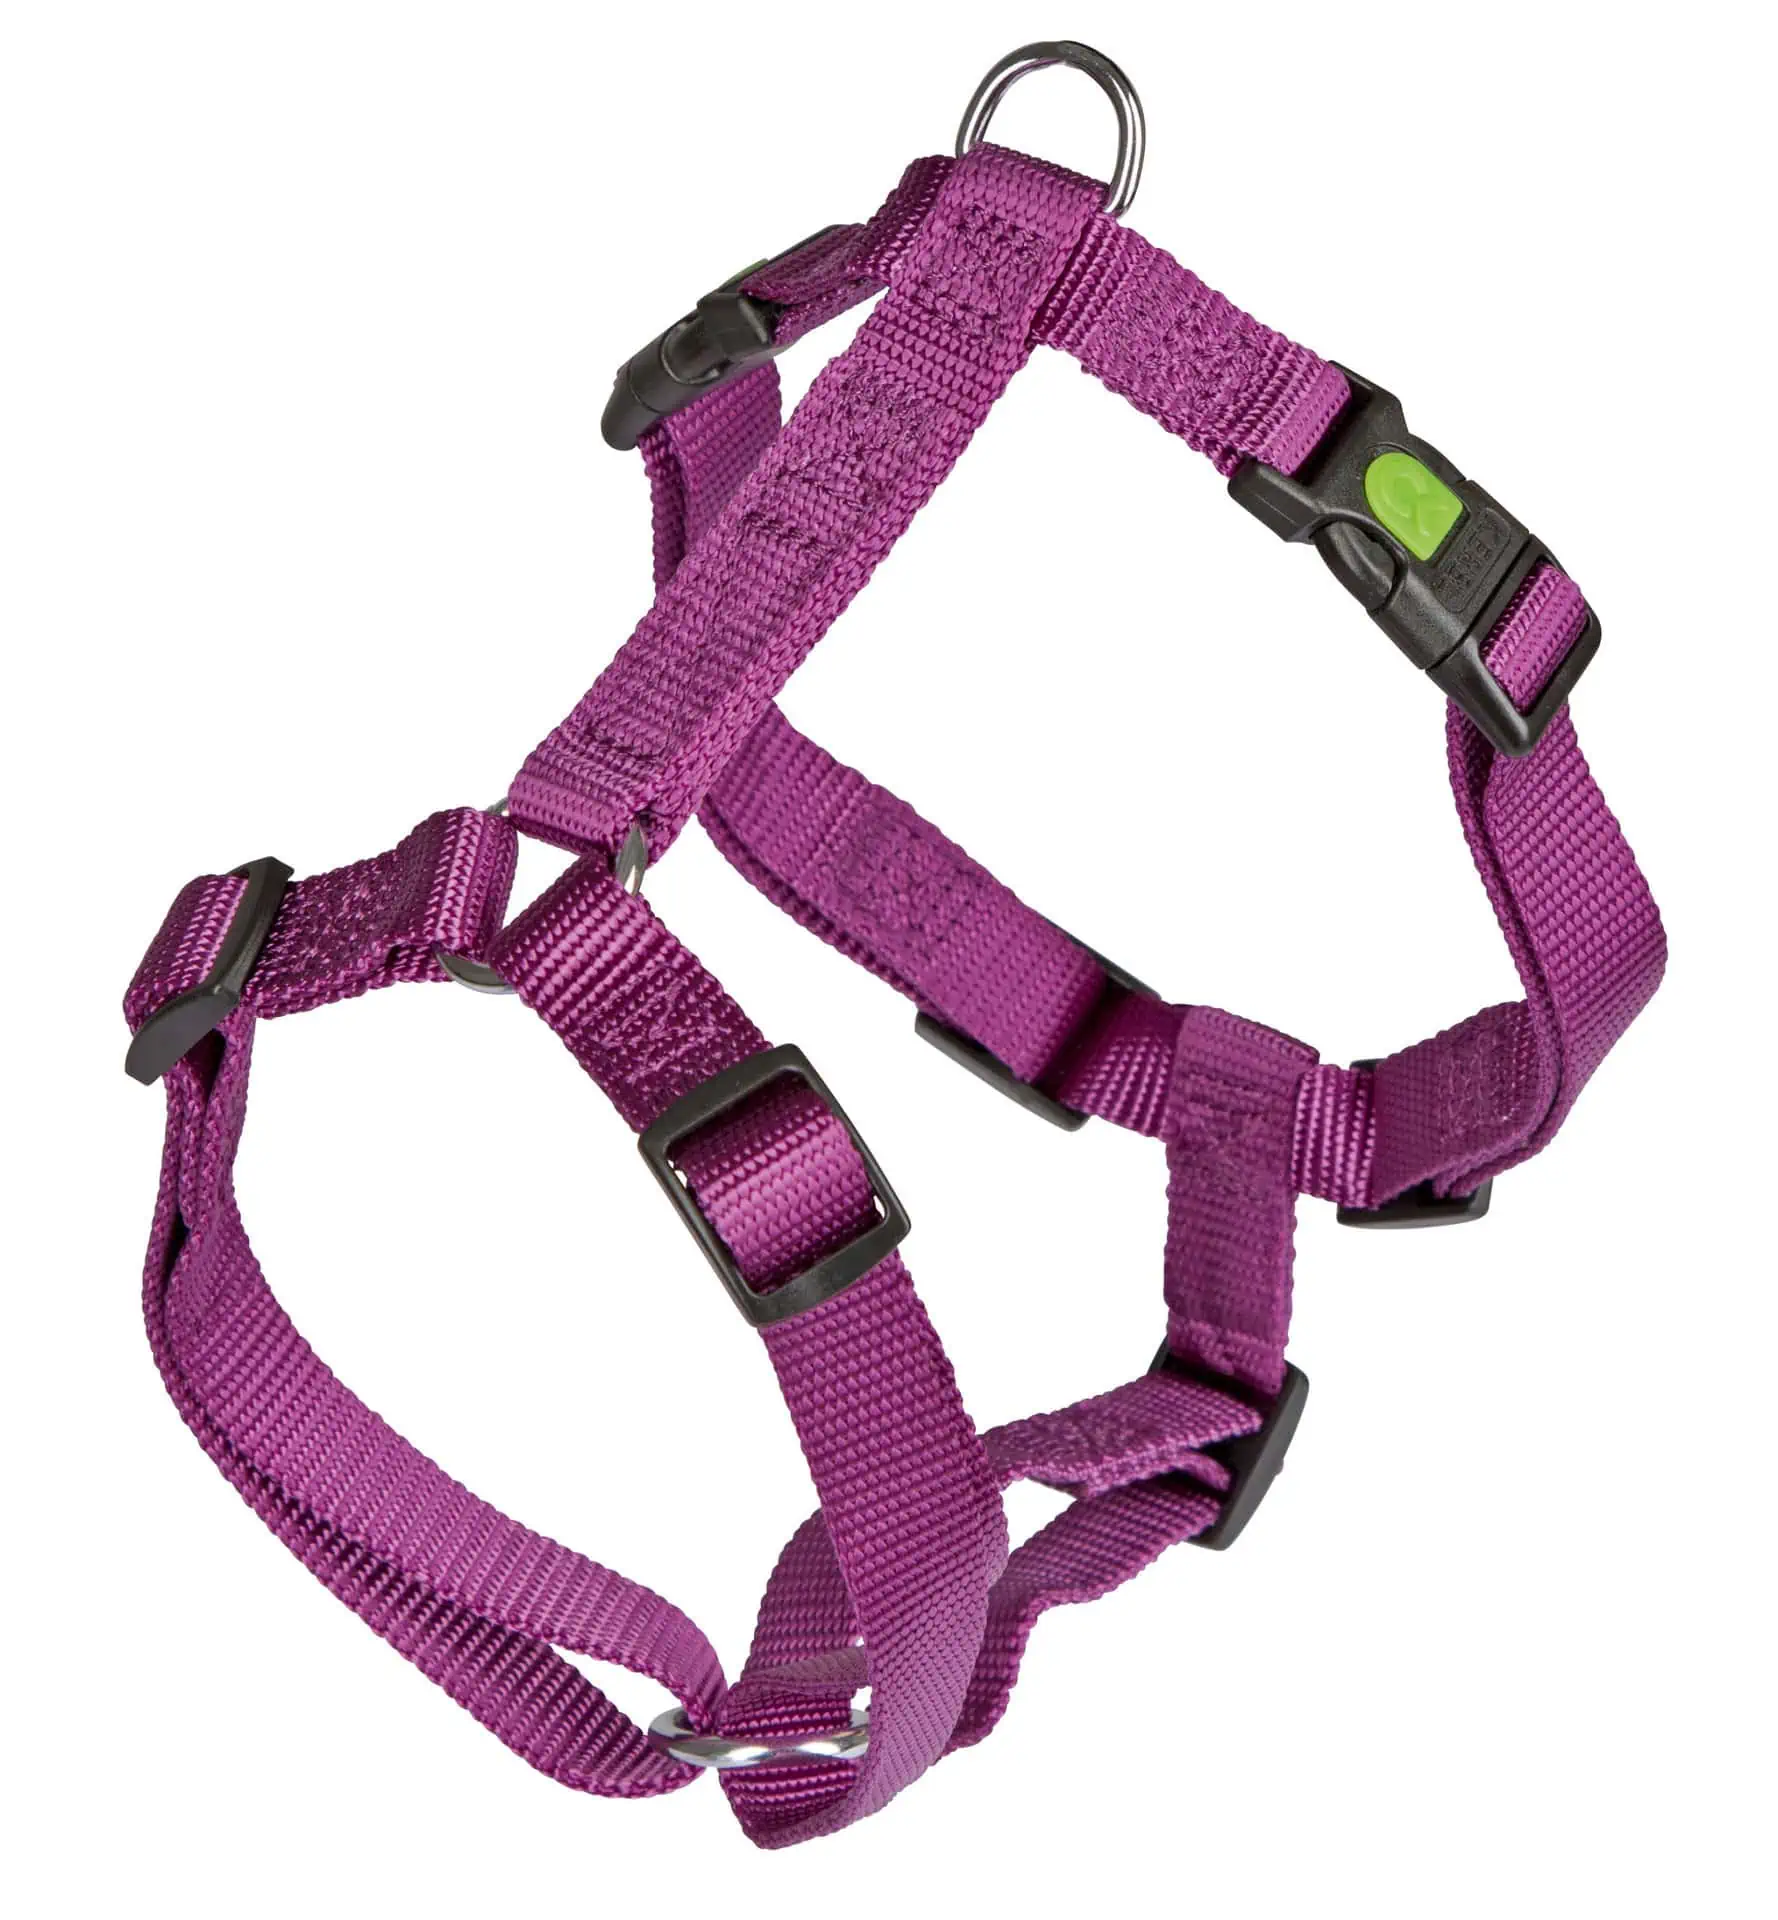 Harness Miami purple 30-40 cm, 15 mm